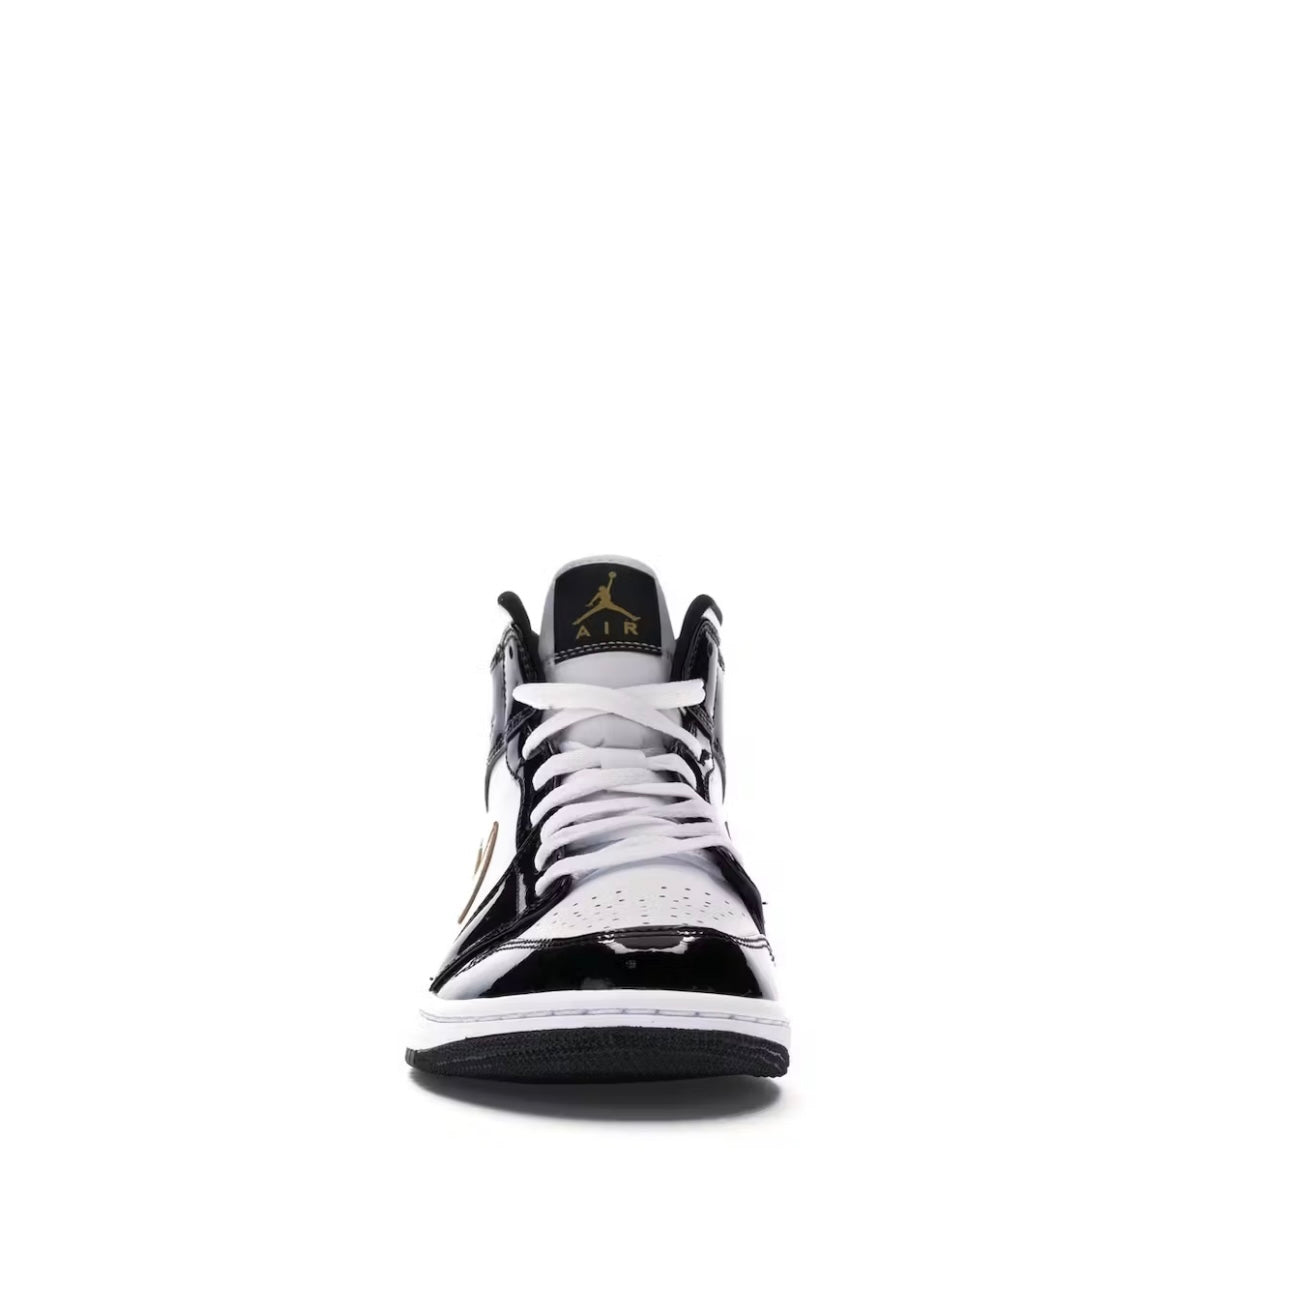 Air Jordan 1 Mid Patent gold - PENGUIN SHOES Penguin shoes